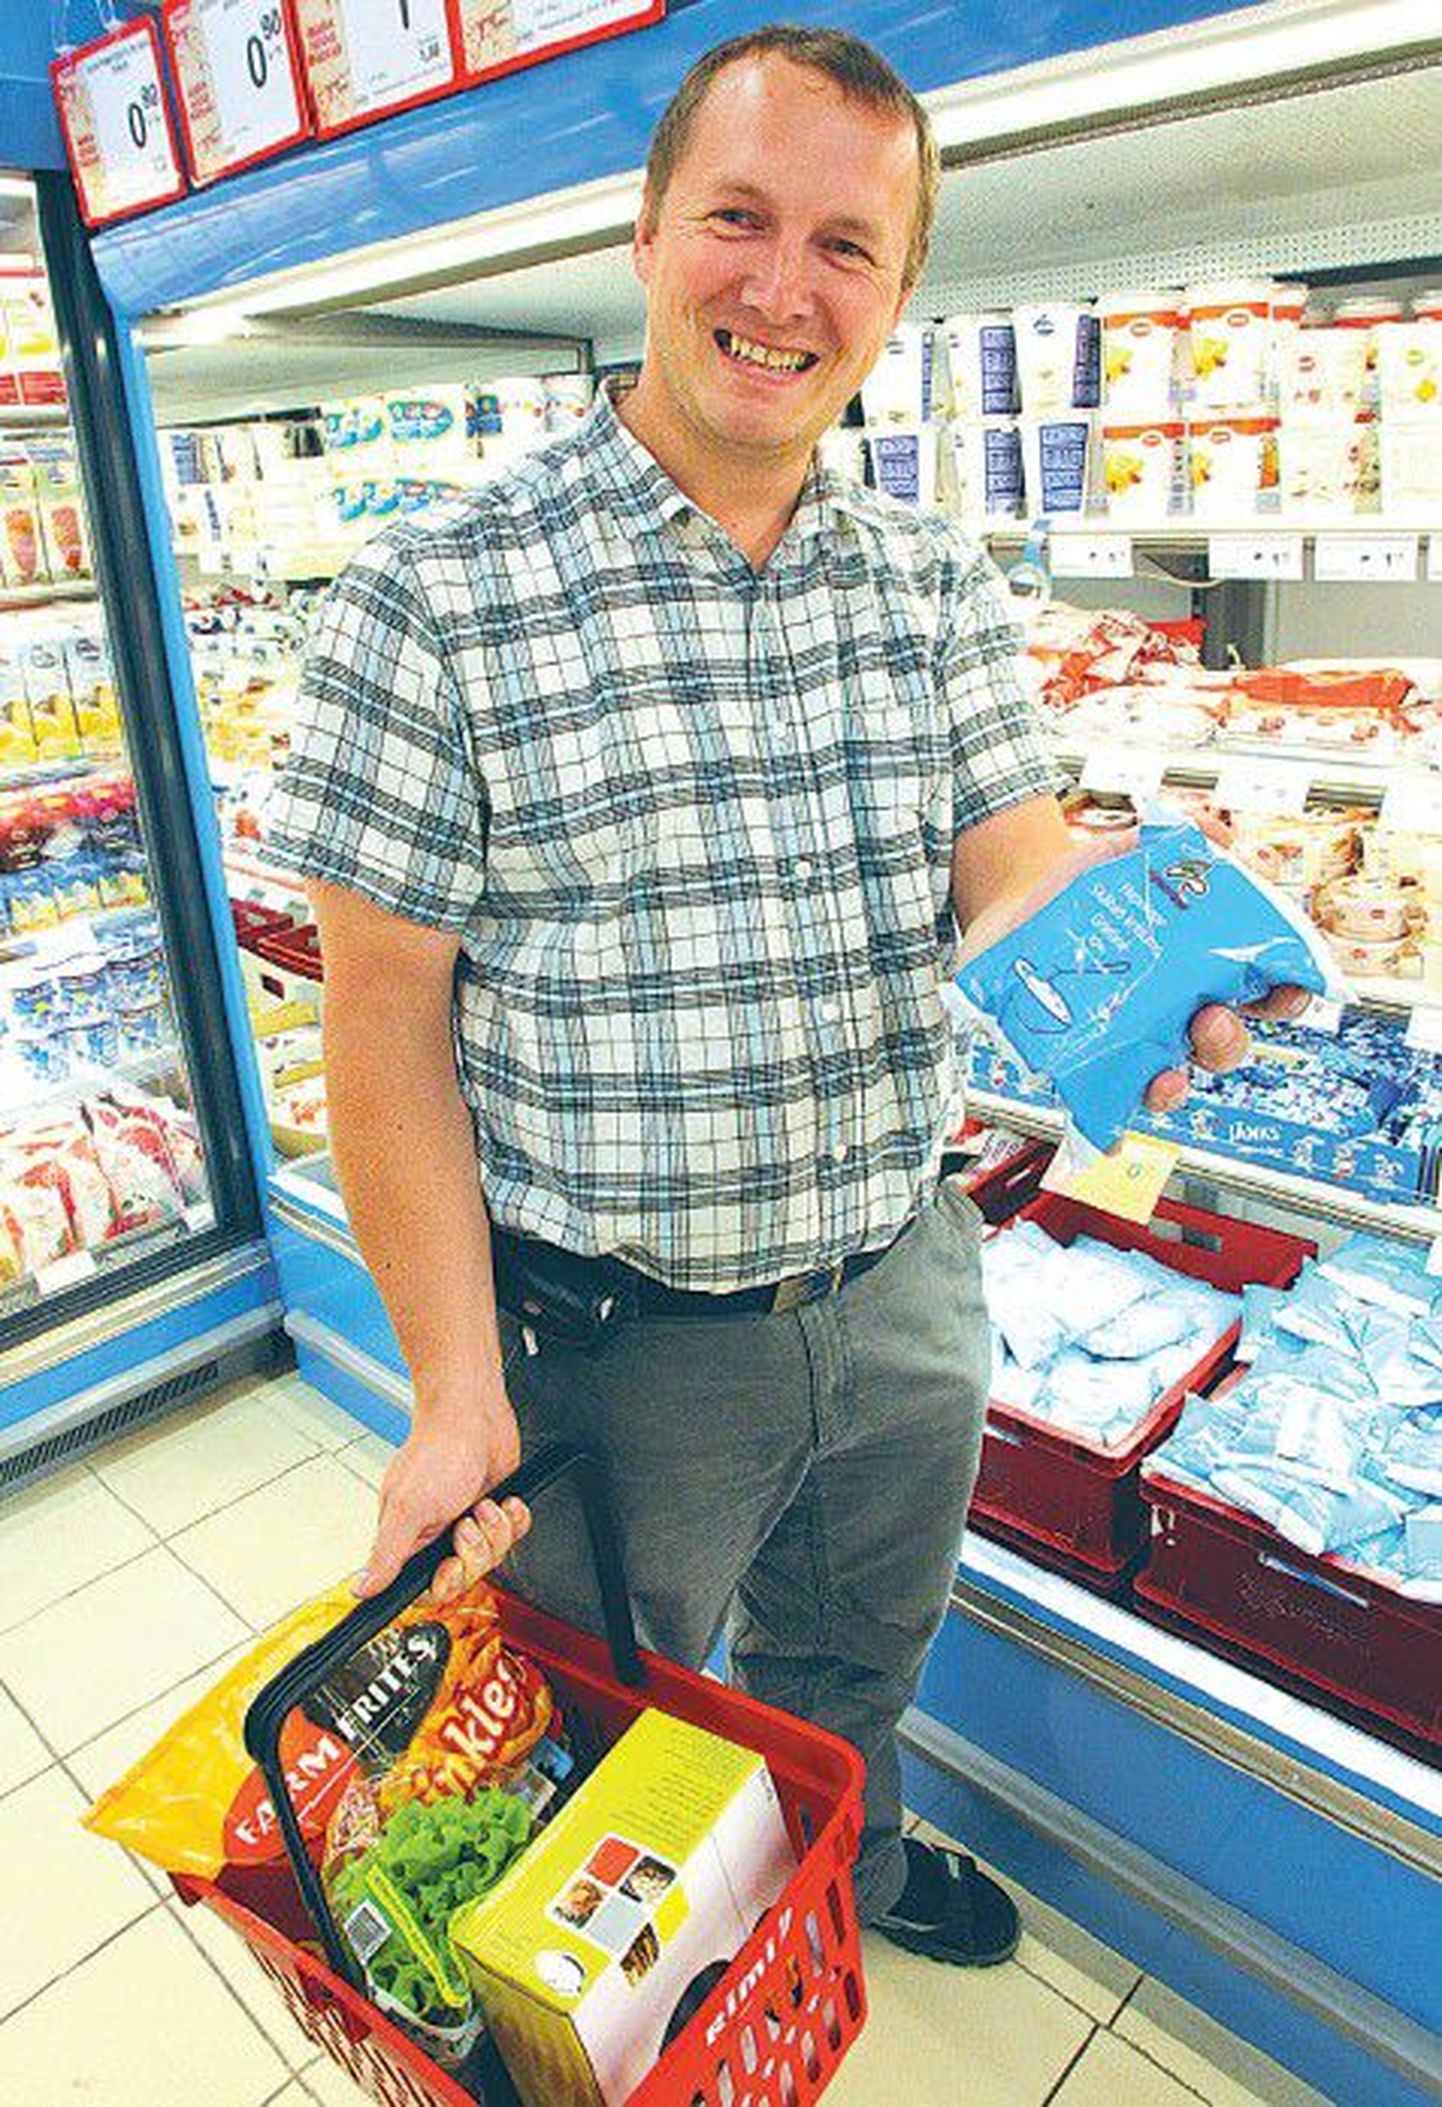 Для того чтобы пища имела «правильный» вкус, жирность сметаны должна составлять все-таки 20 процентов, считает Вирго Колкс, который в четверг вместе с семьей покупал в магазине Rimi продукты.